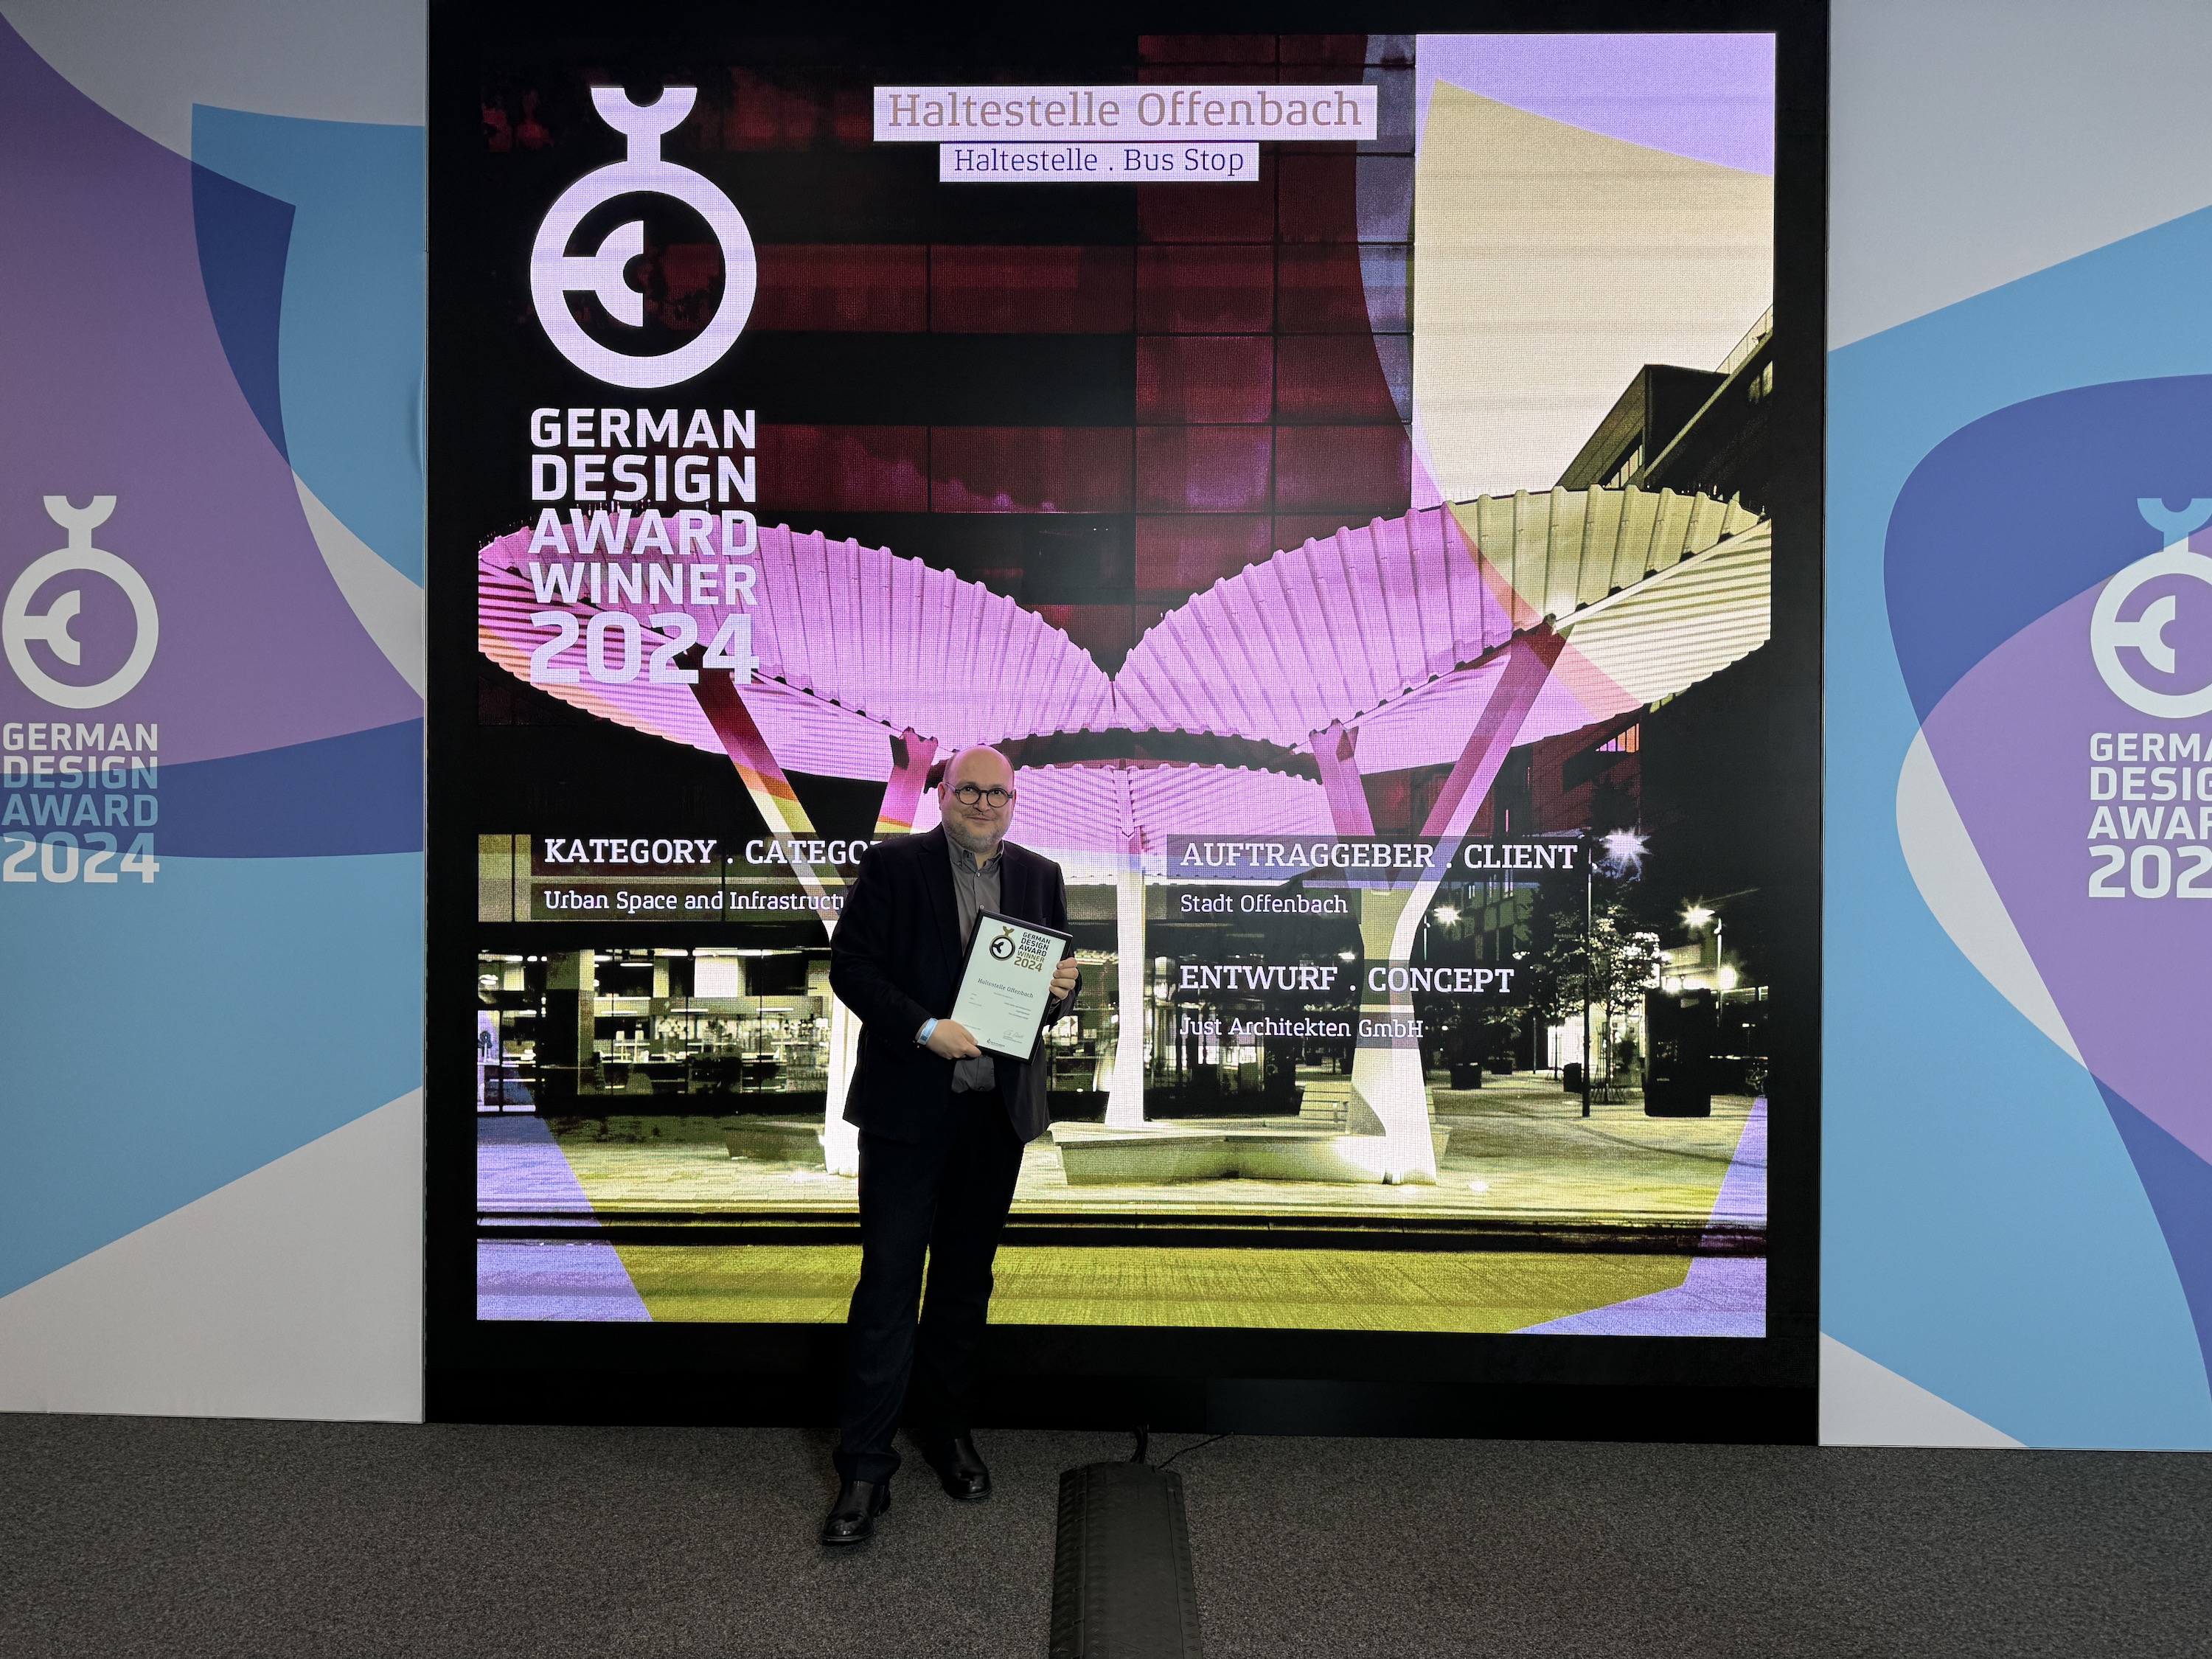 German Design Award für die Haltestelle Offenbach